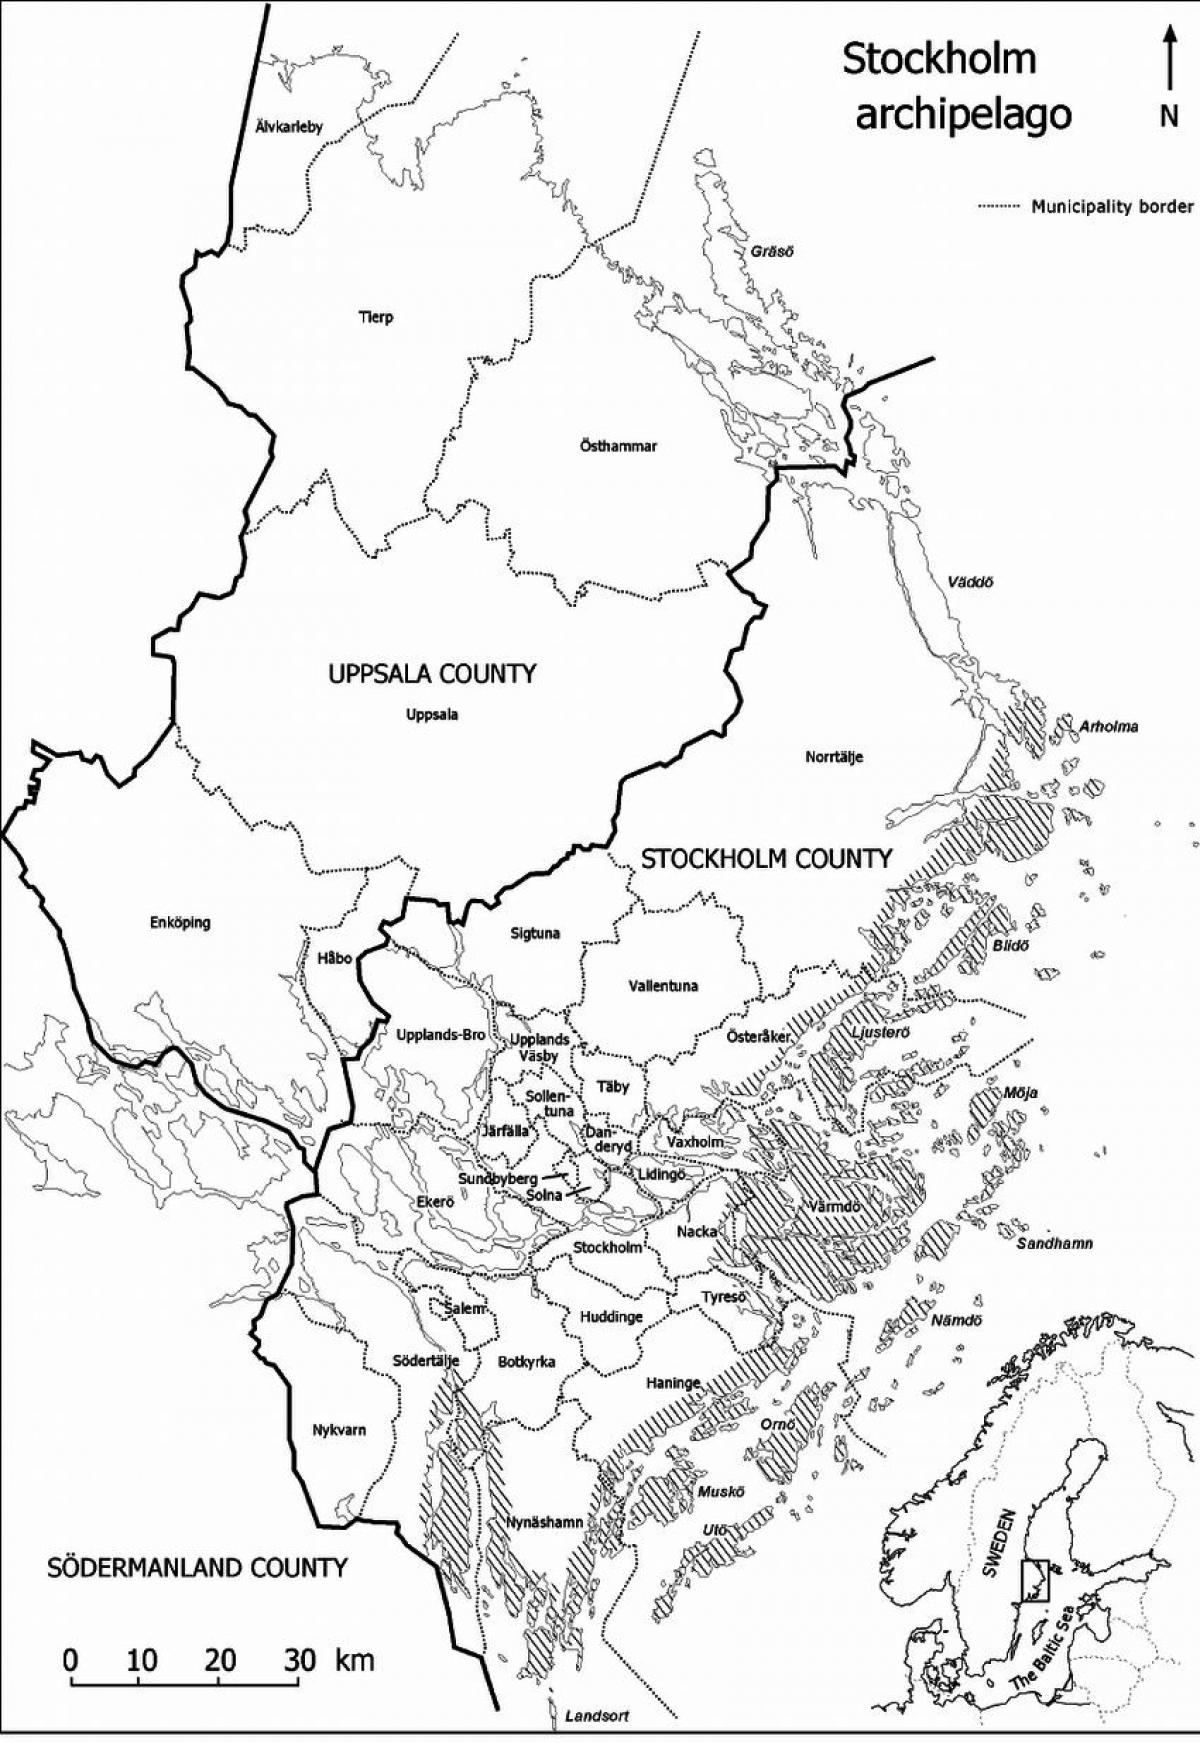 سٹاکہوم جزائر کا نقشہ